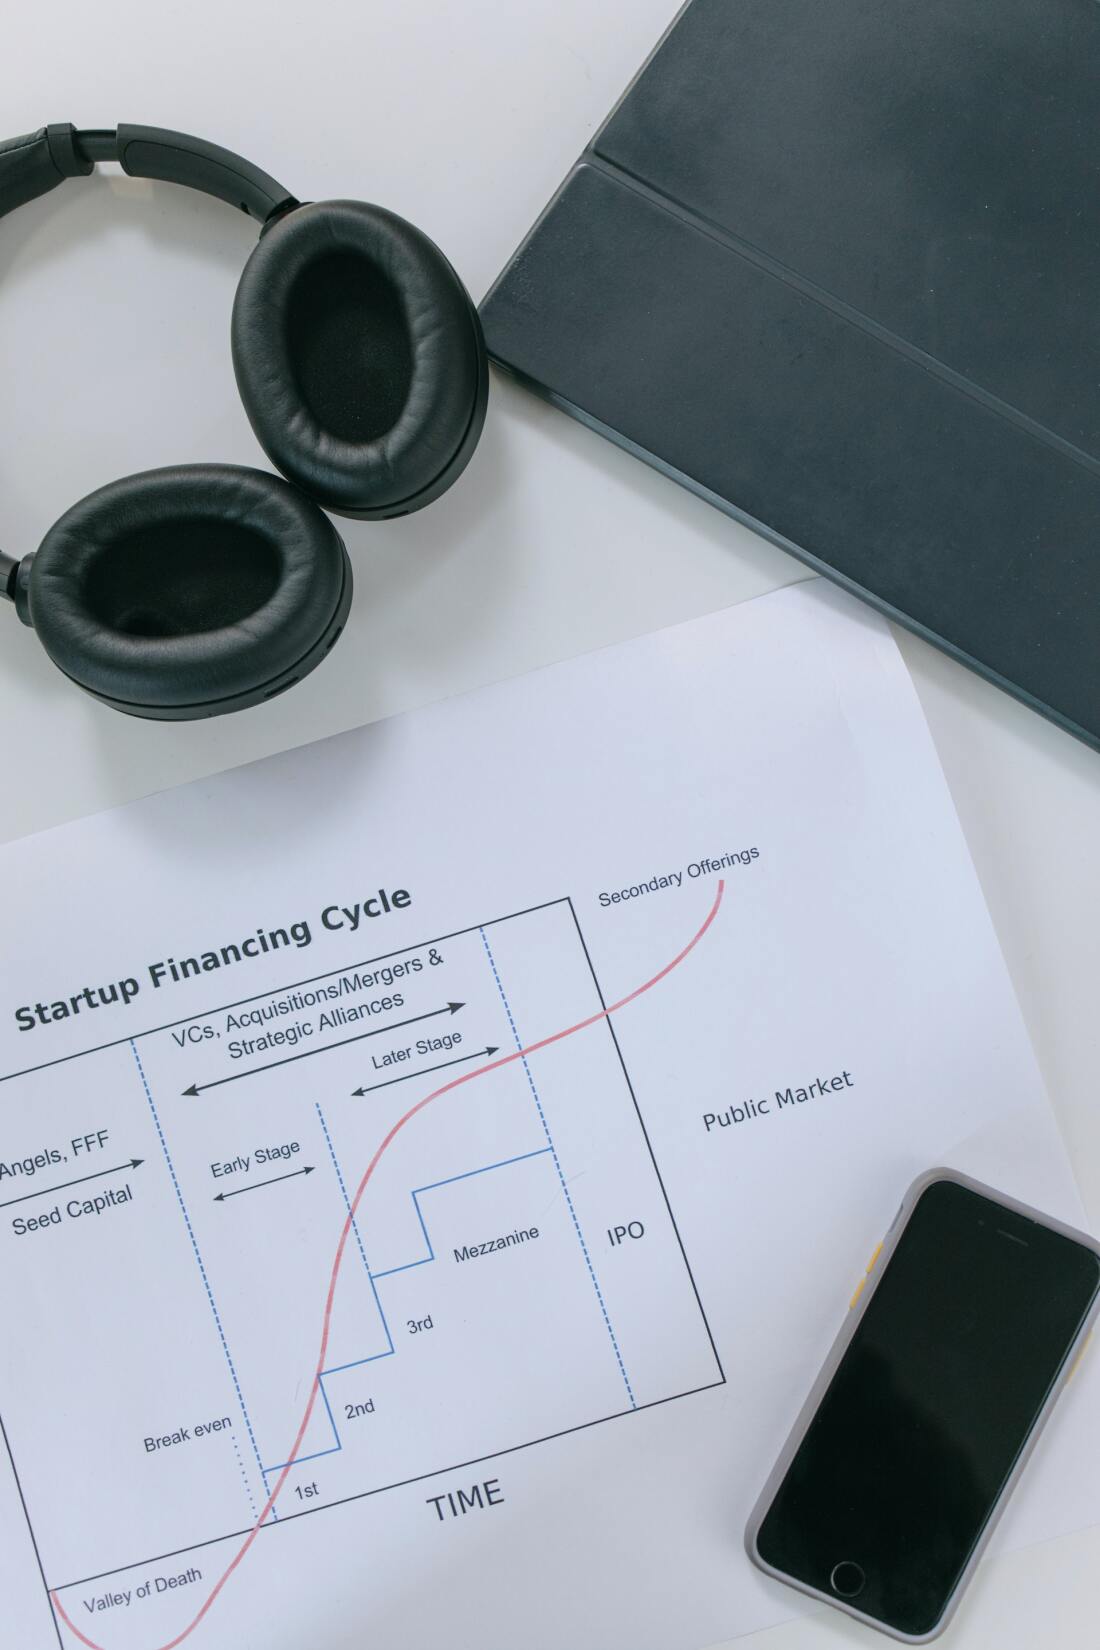 Ein Blatt zeigt das Startup Financing Cycle